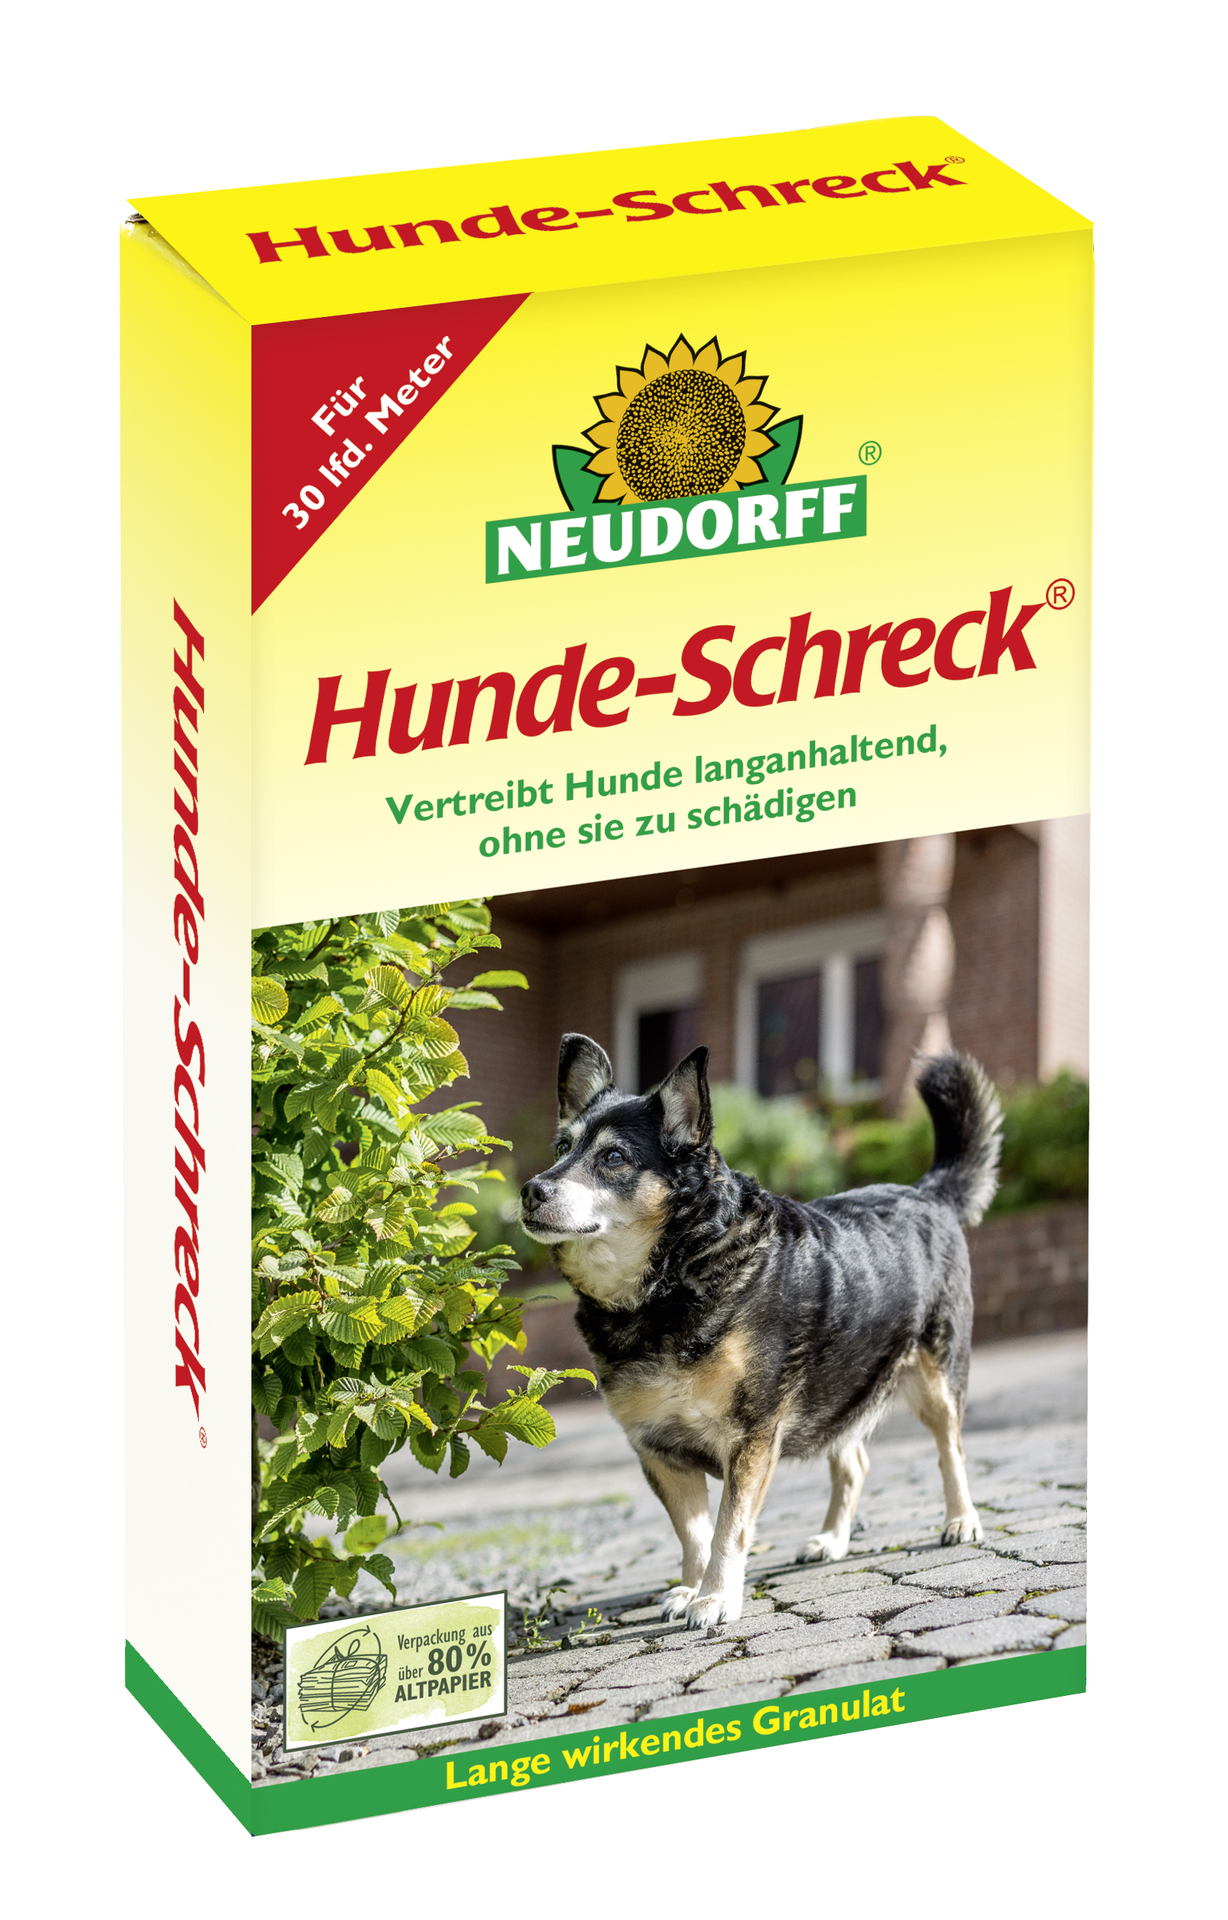 W. Neudorff GmbH KG Hunde-Schreck